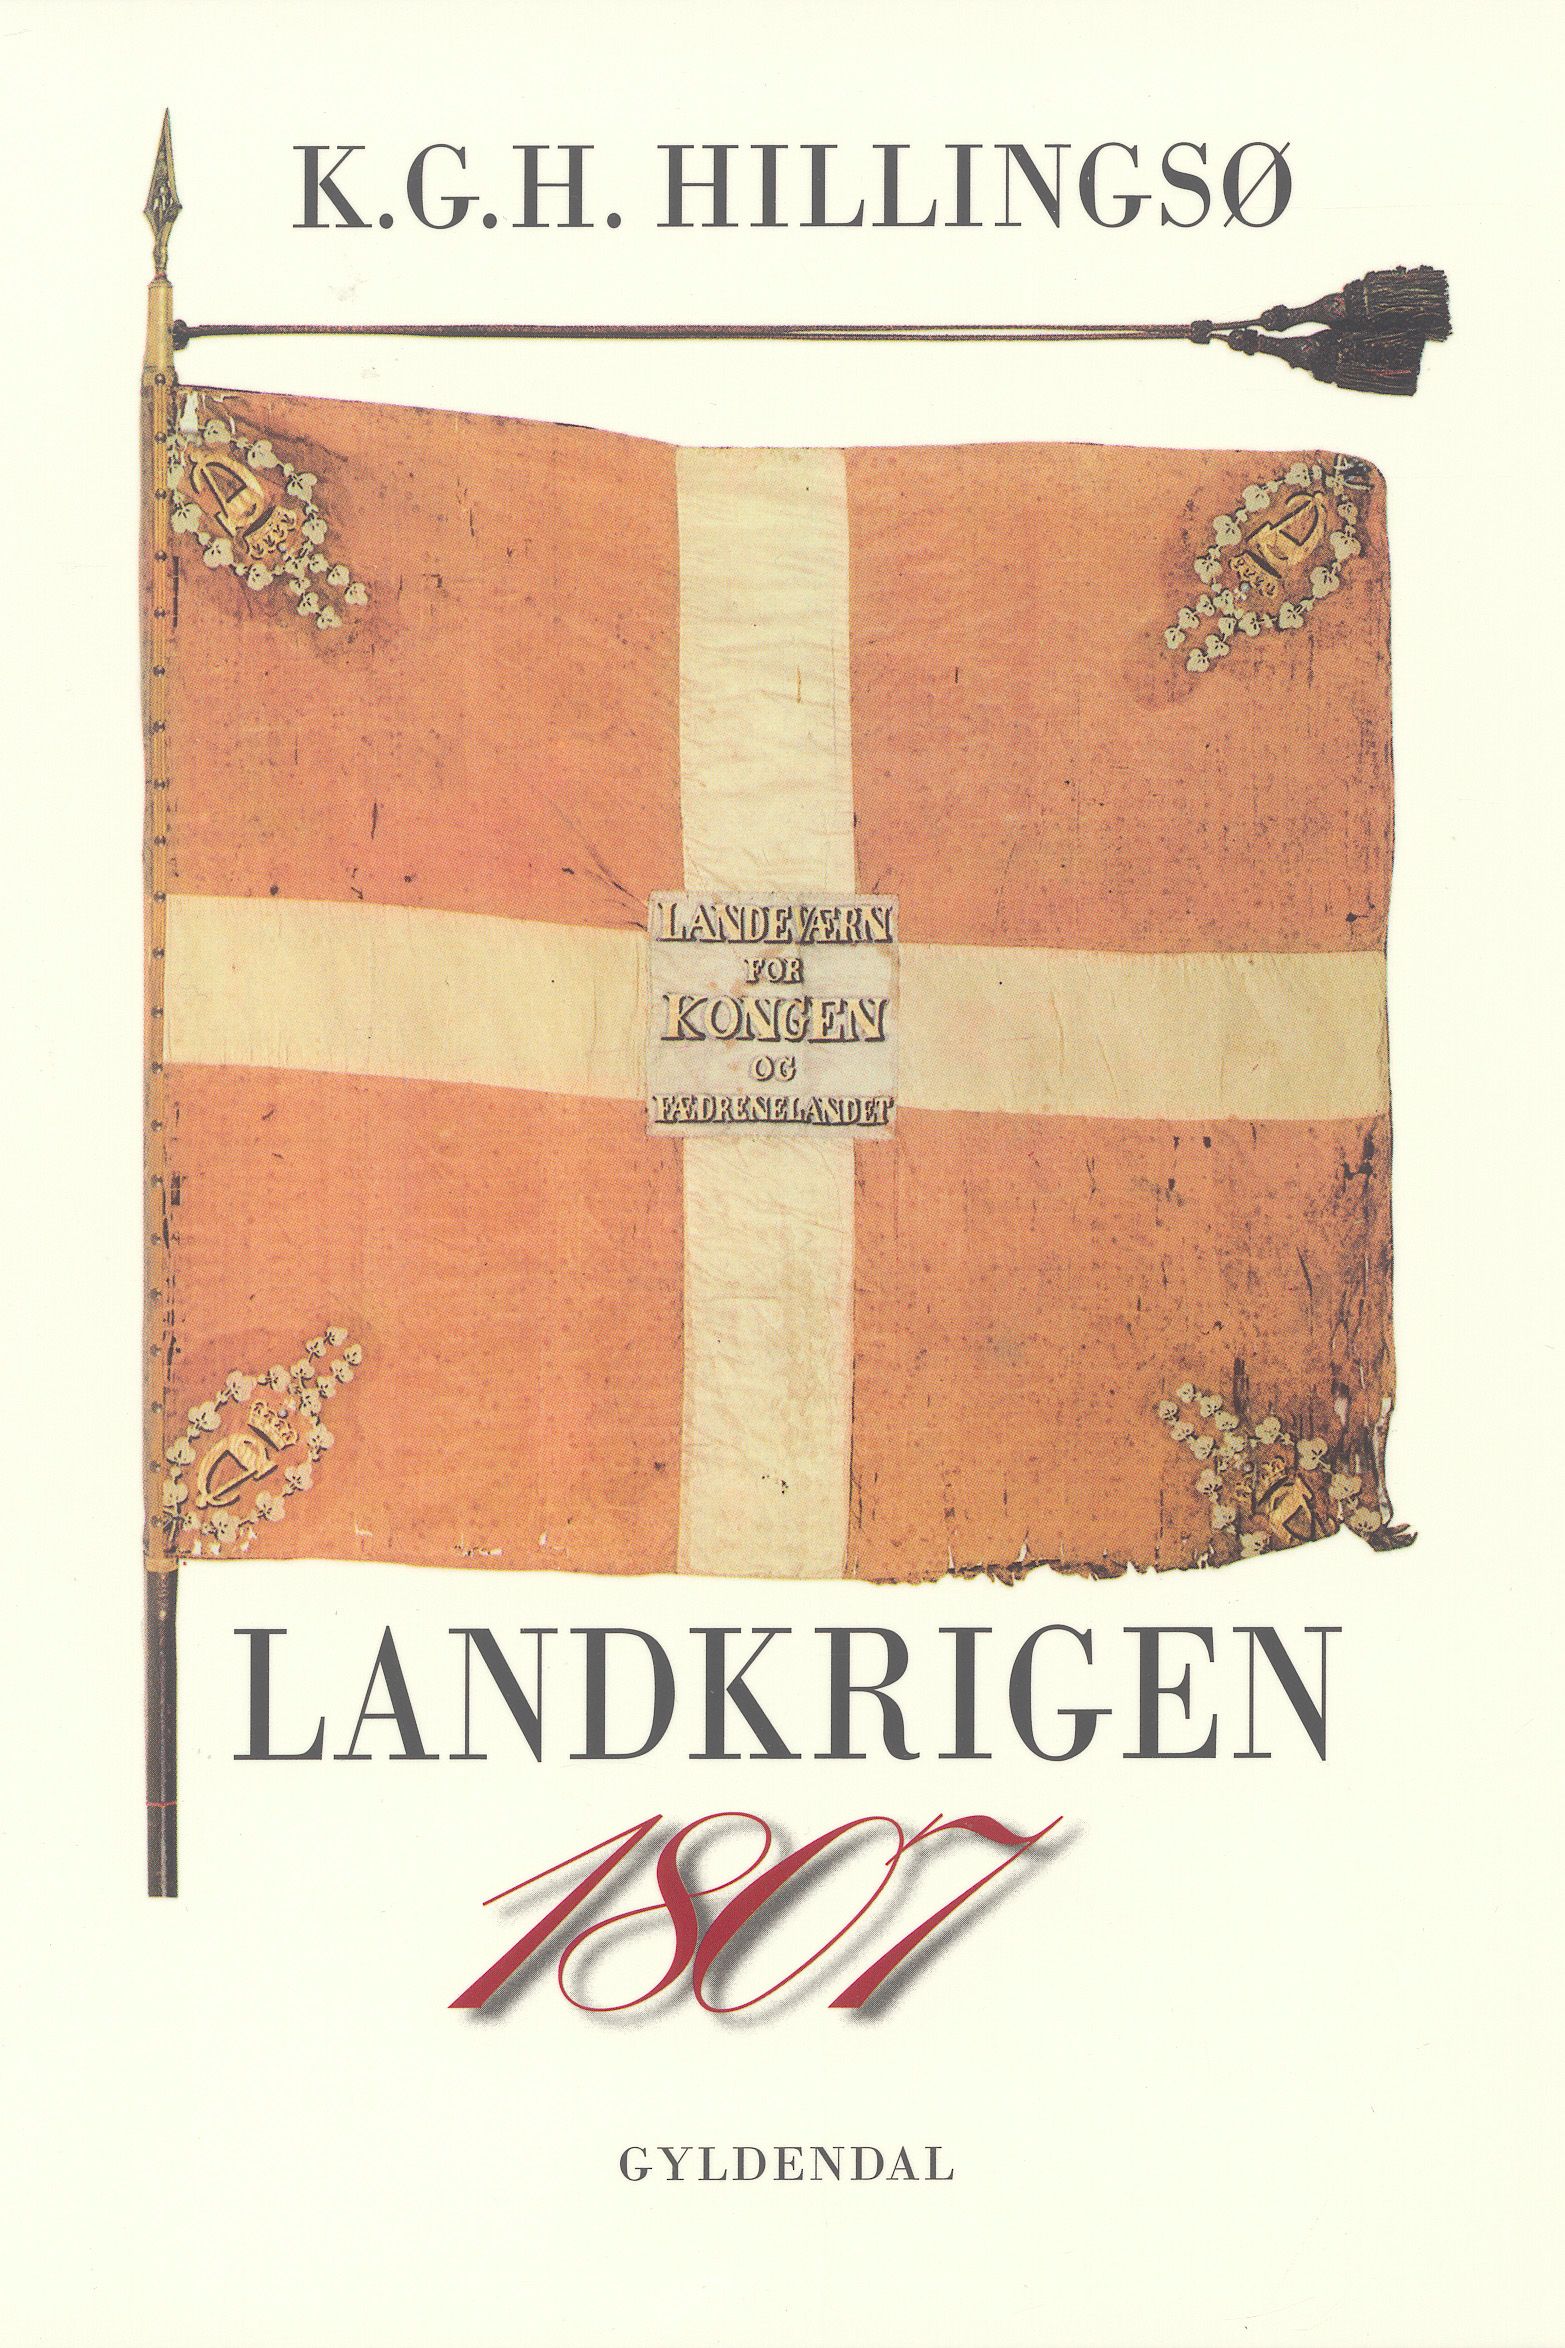 1807 Landkrigen, e-bok av Kjeld Hillingsø